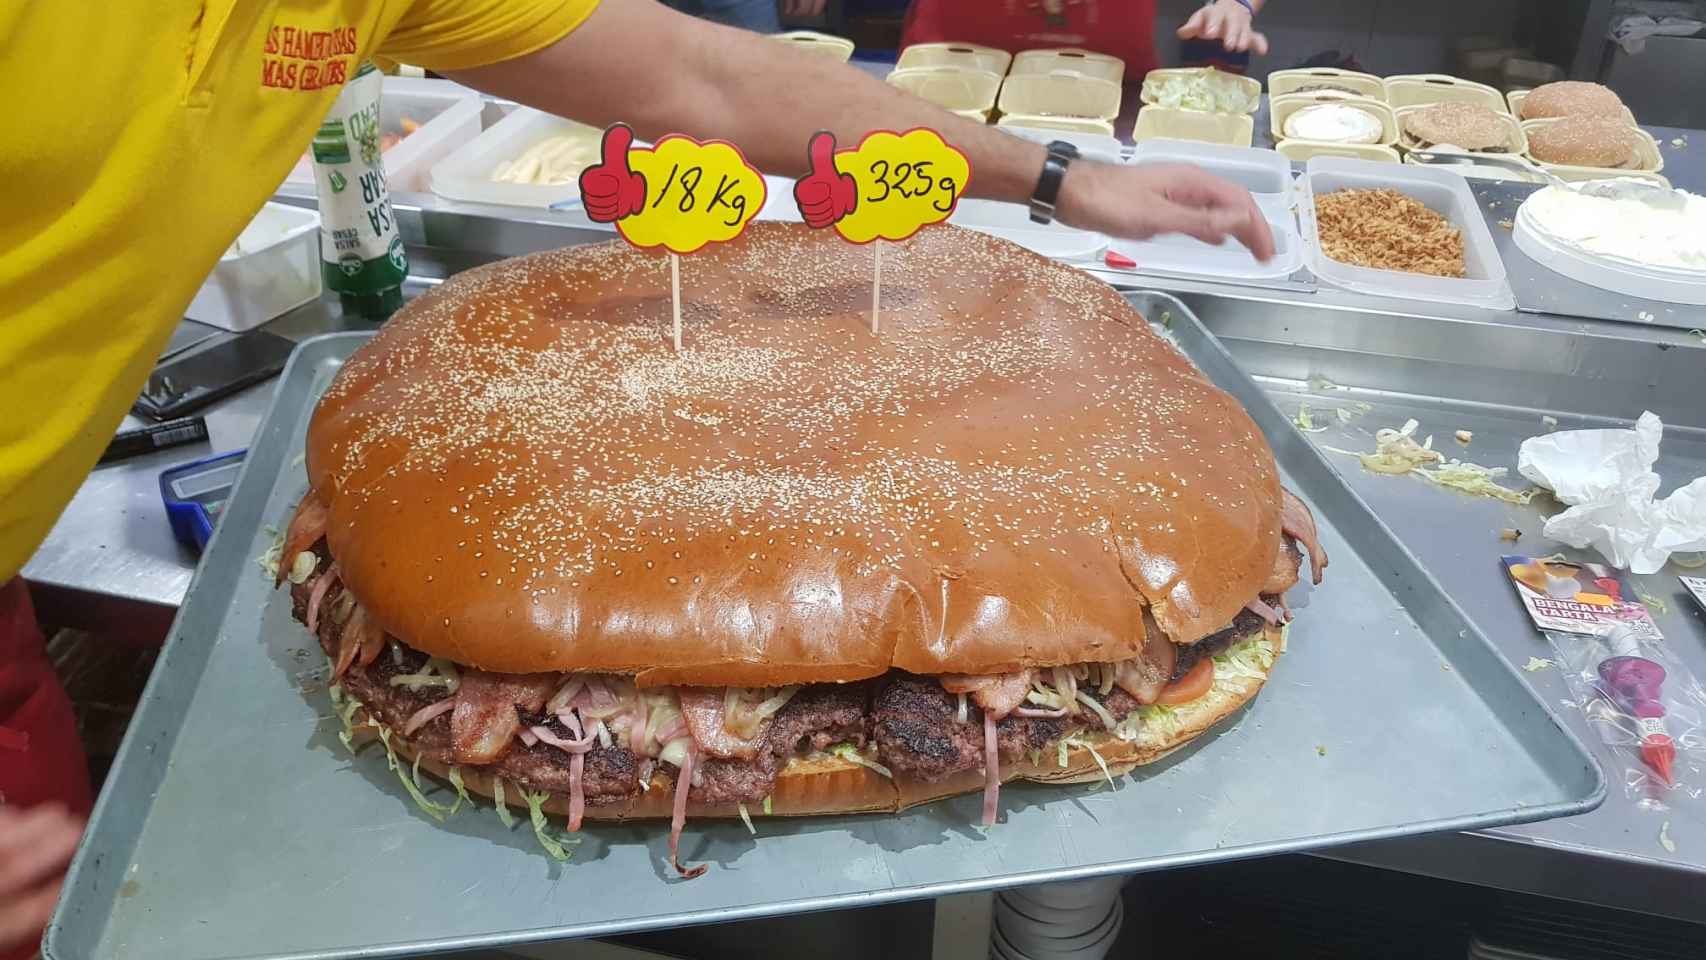 Detalle de una de las hamburguesas más grandes del menú de Different Burguer.